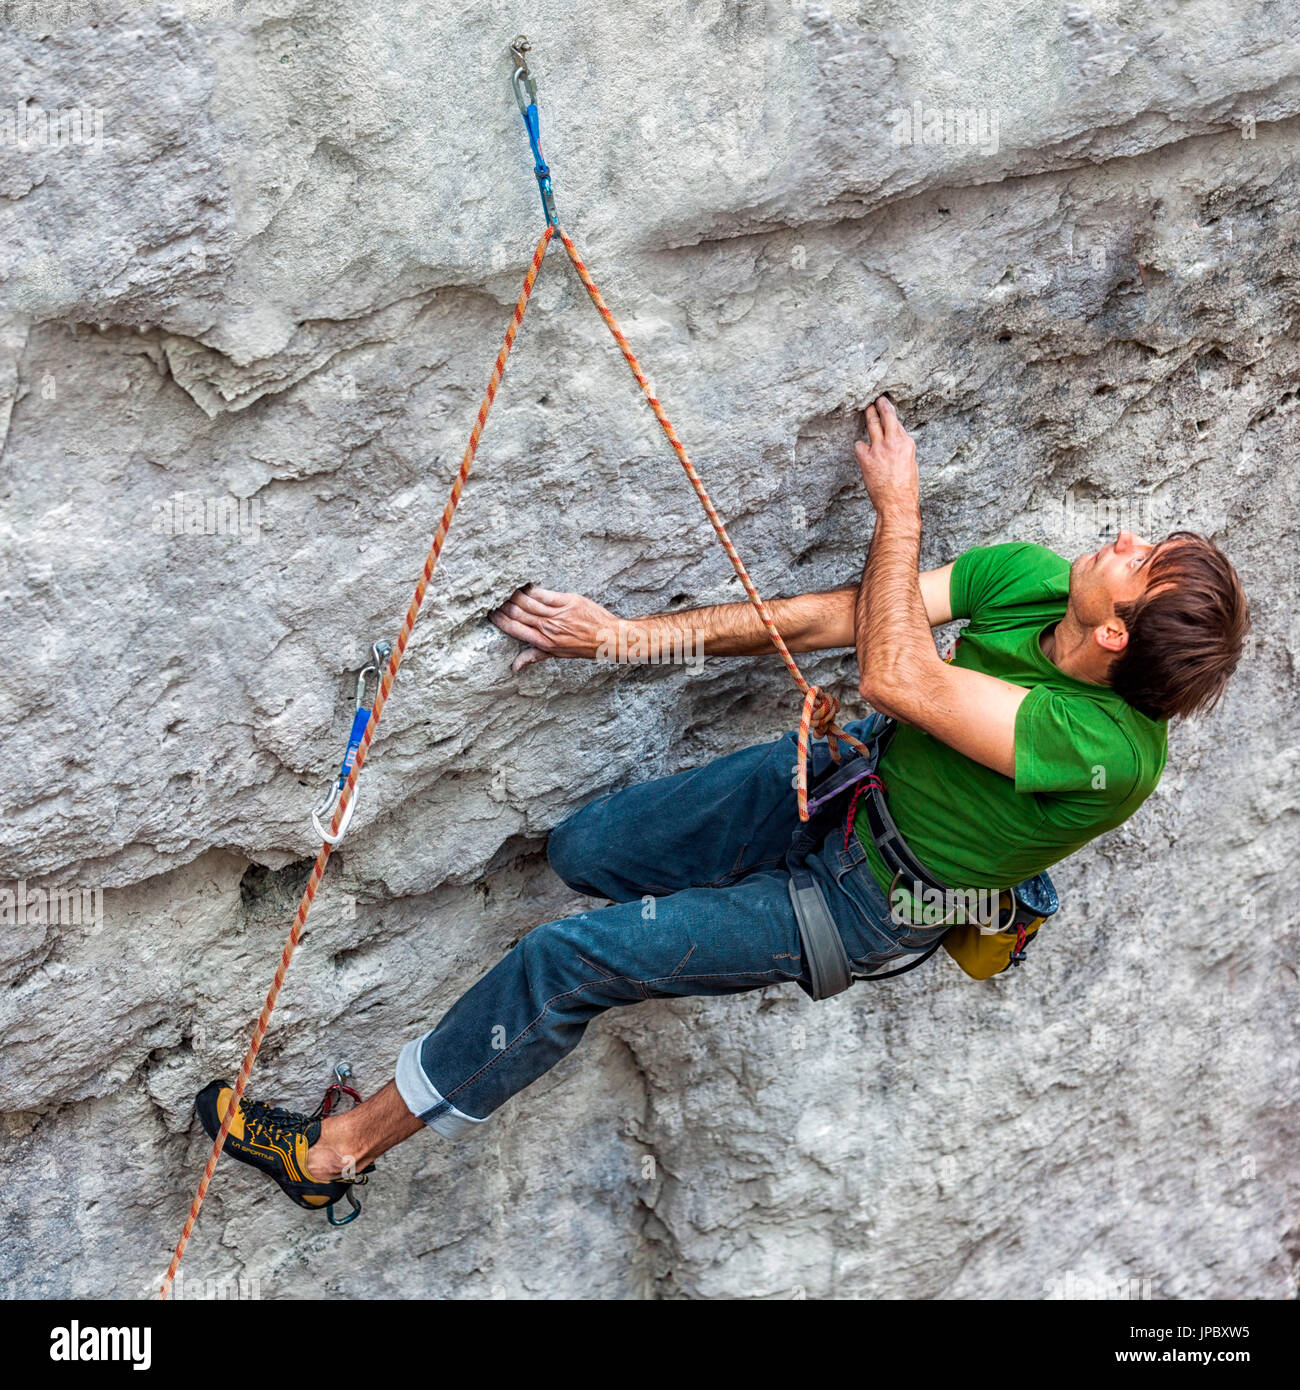 Freeclimbing, Klettern in natürlichen Felsen. Kletterer in Aktion auf einem Felsenweg ausgestattet. Gares, Dolomiten, Veneto, Italien Stockfoto